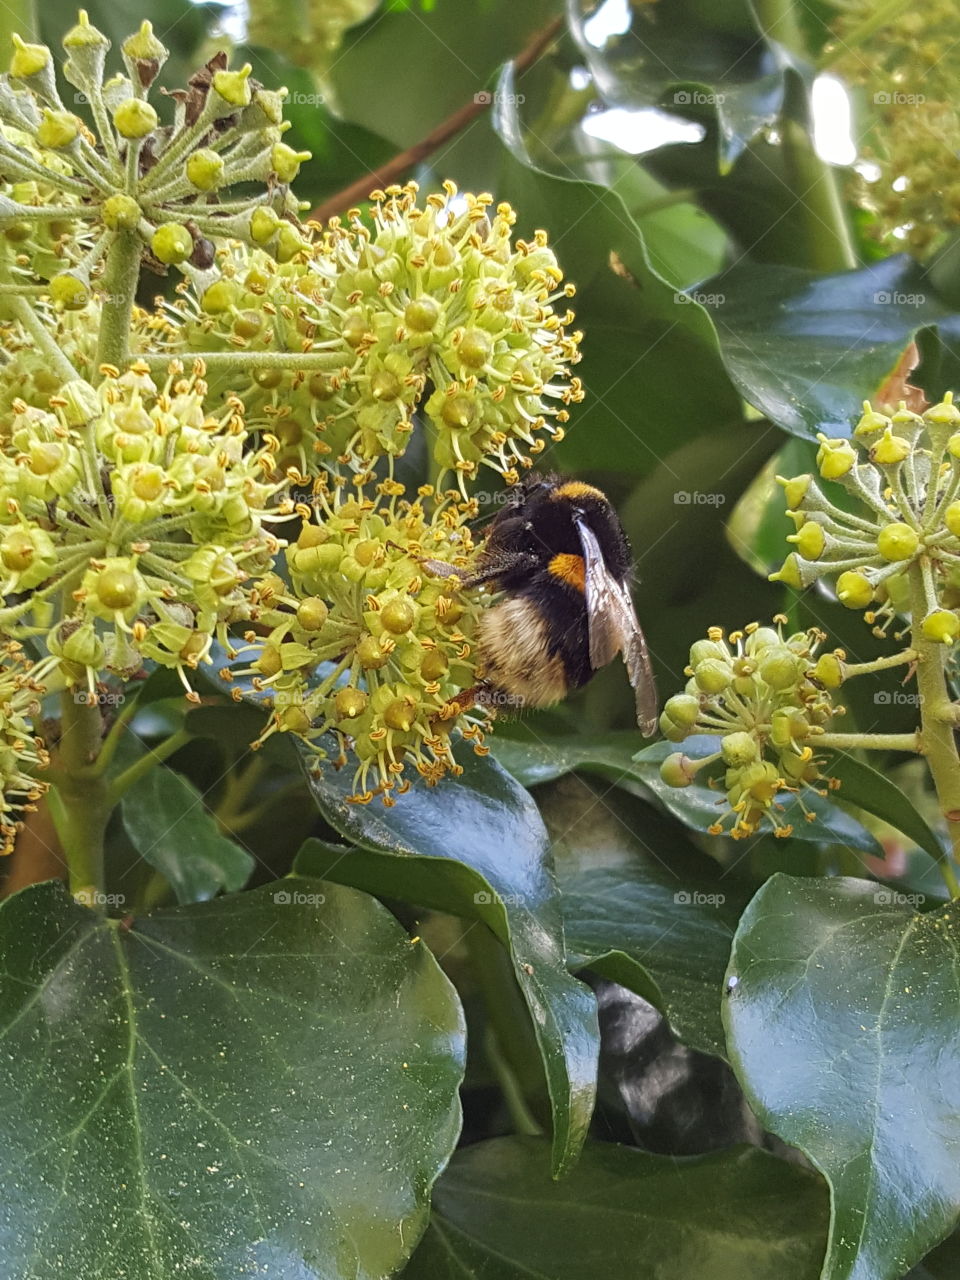 Sweet bumblebee